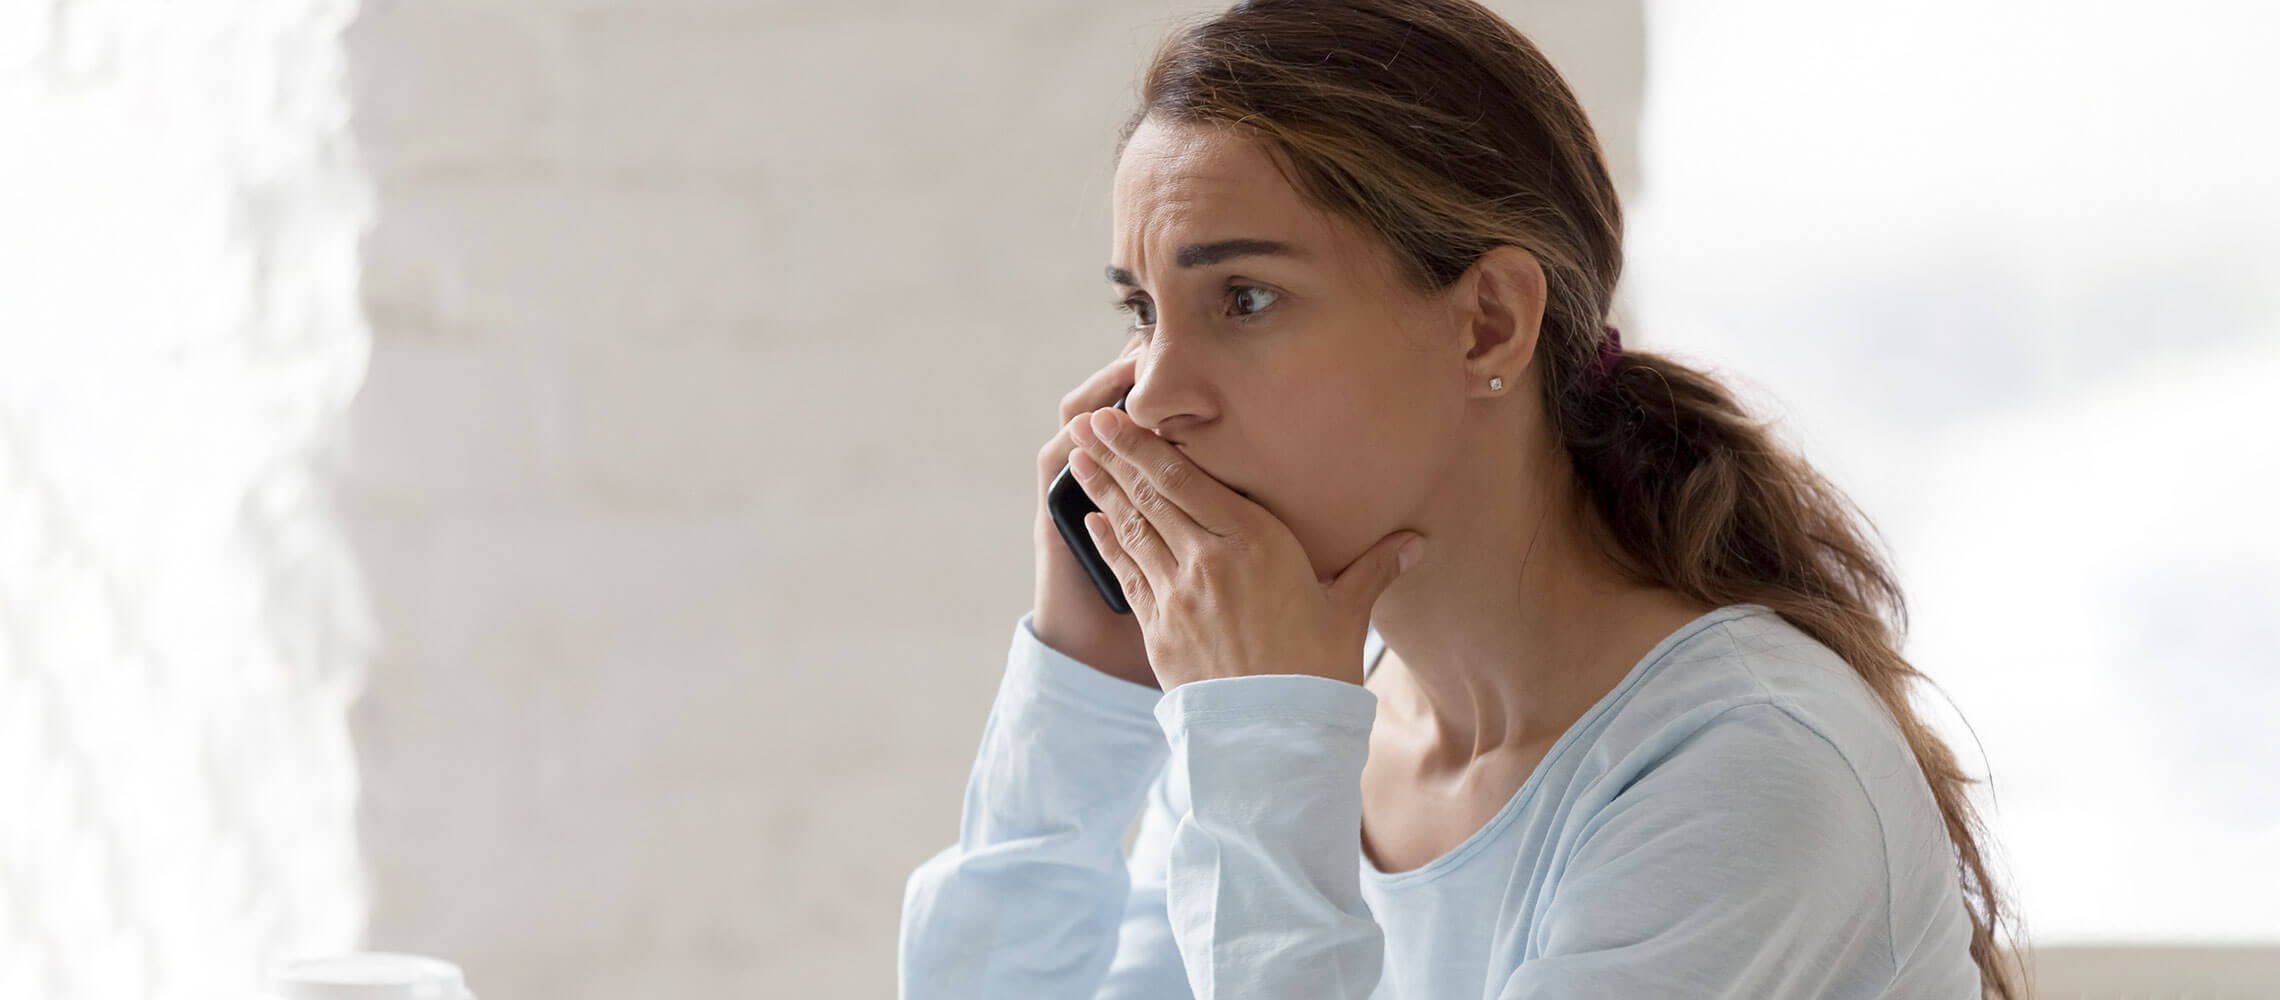 worried woman speaking on phone